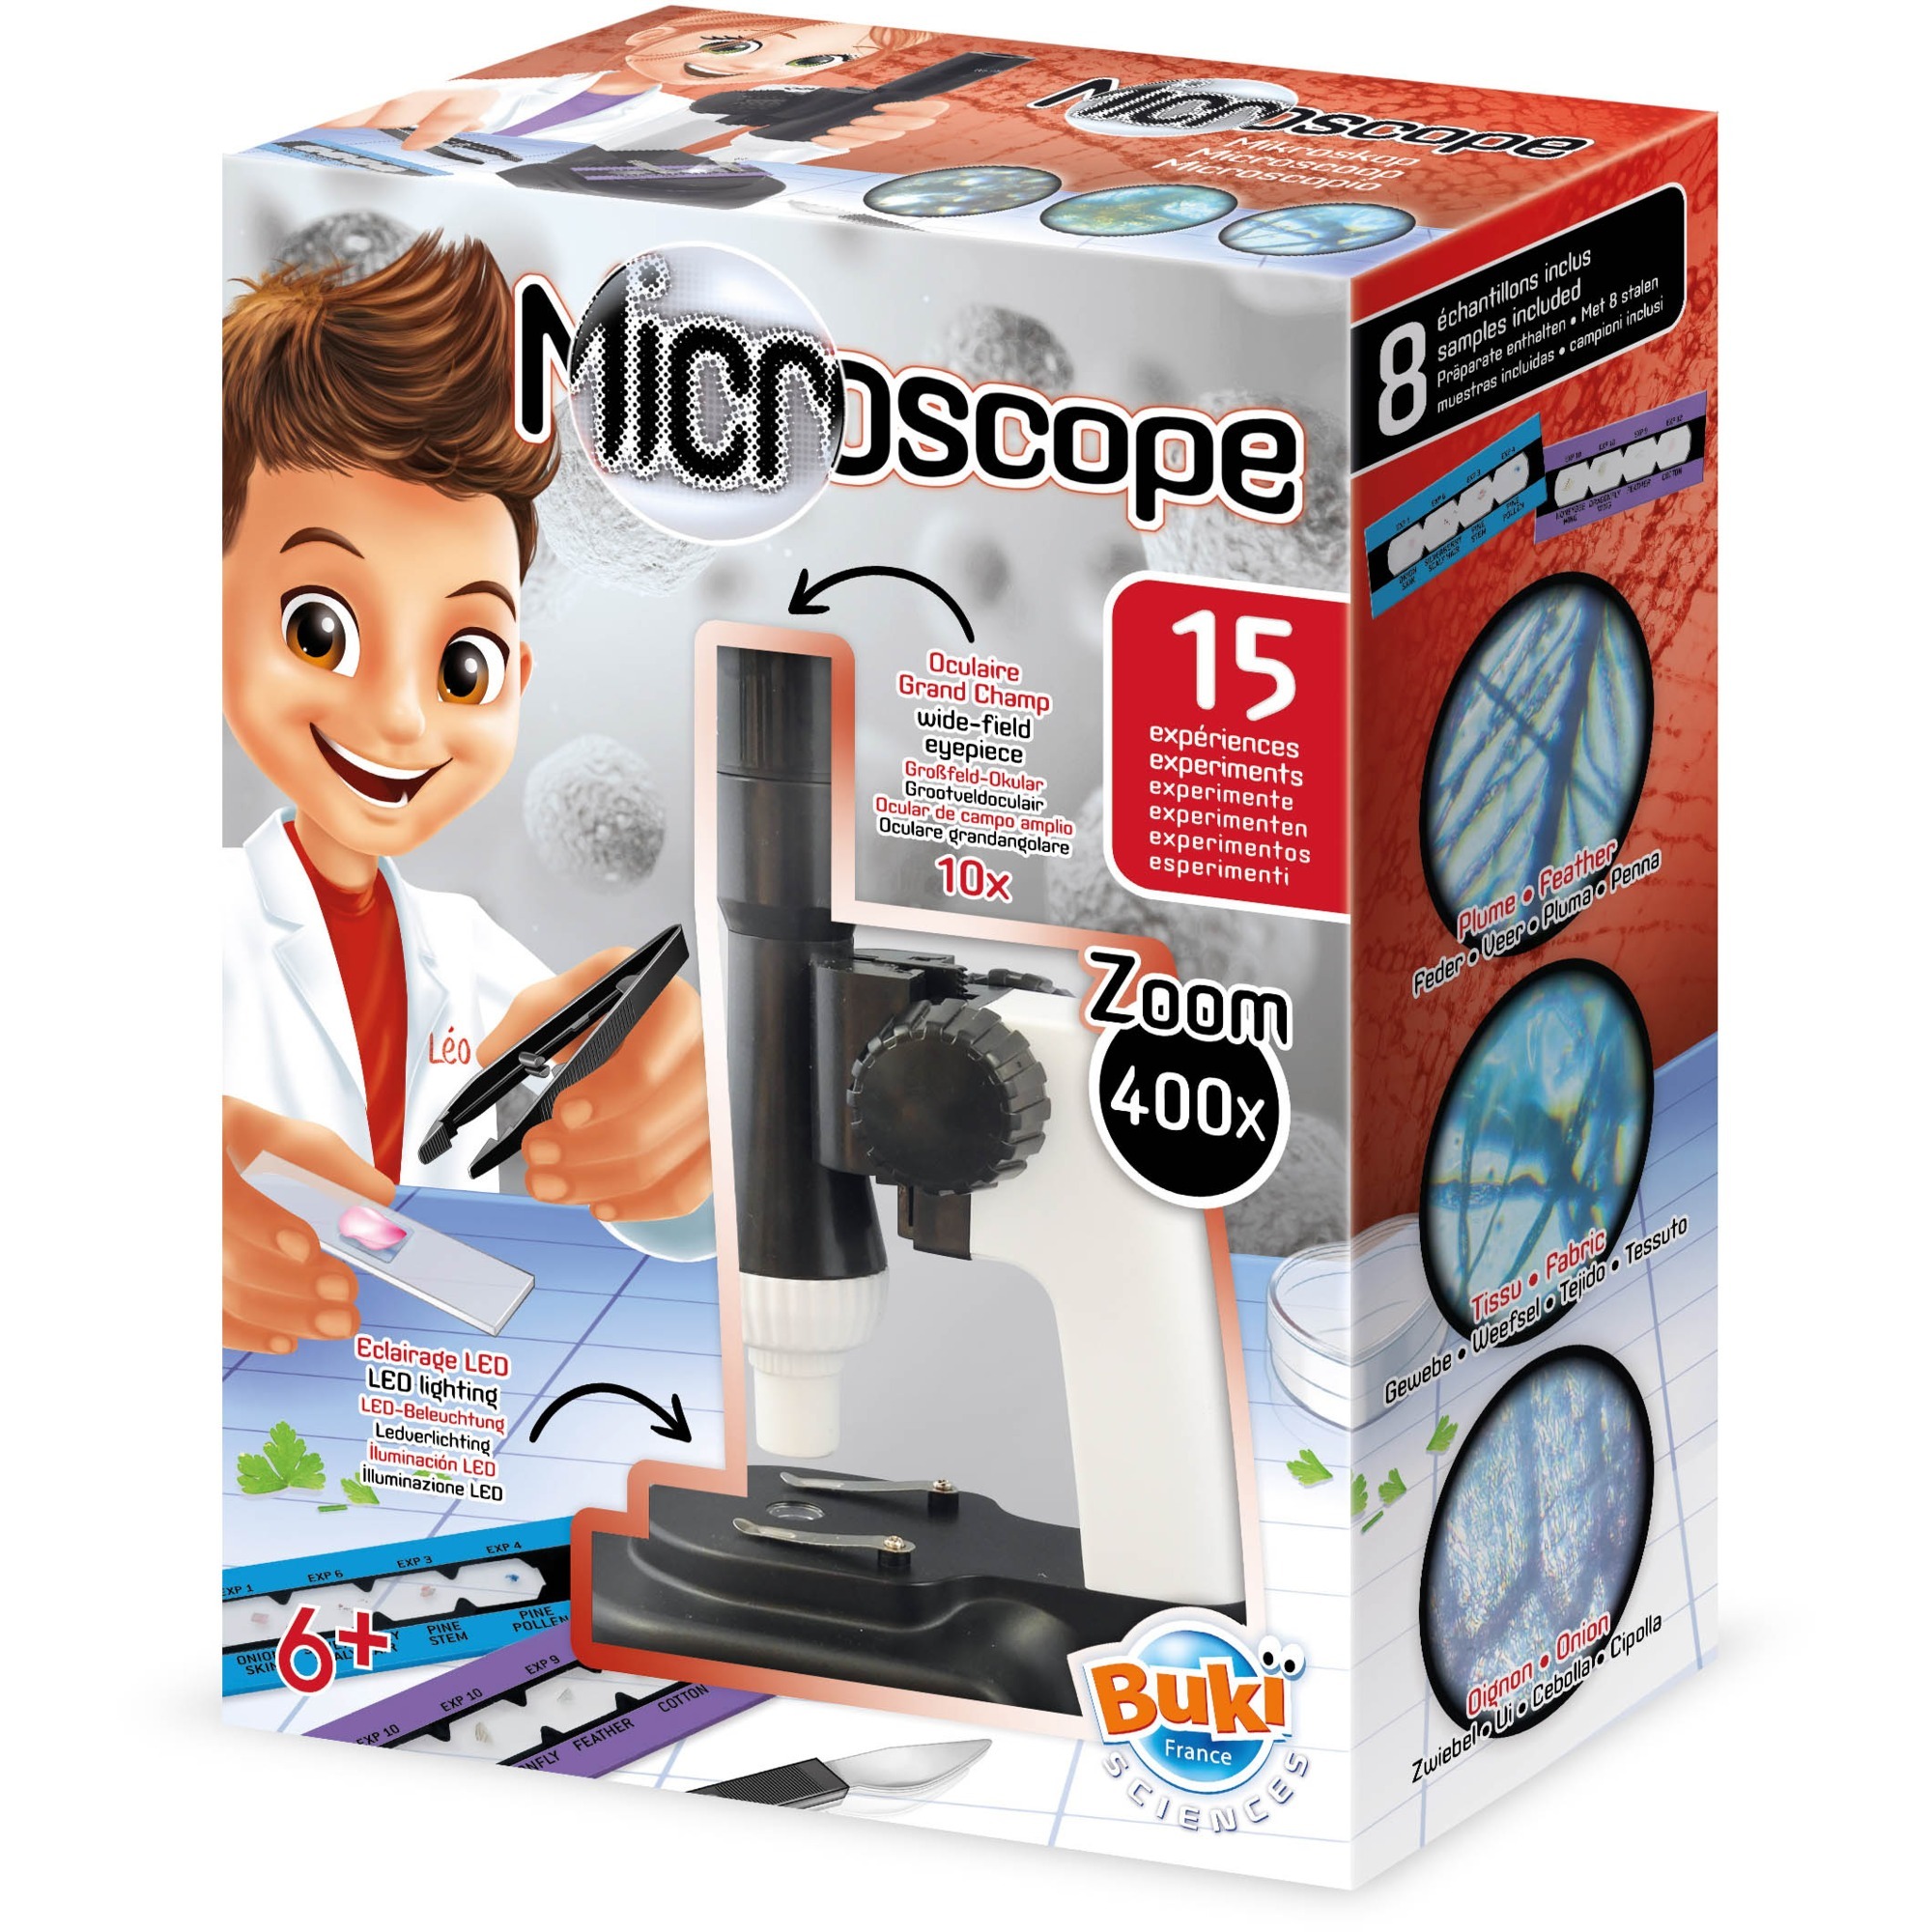 Image of Alternate - Mikroskop 15 Experimente online einkaufen bei Alternate